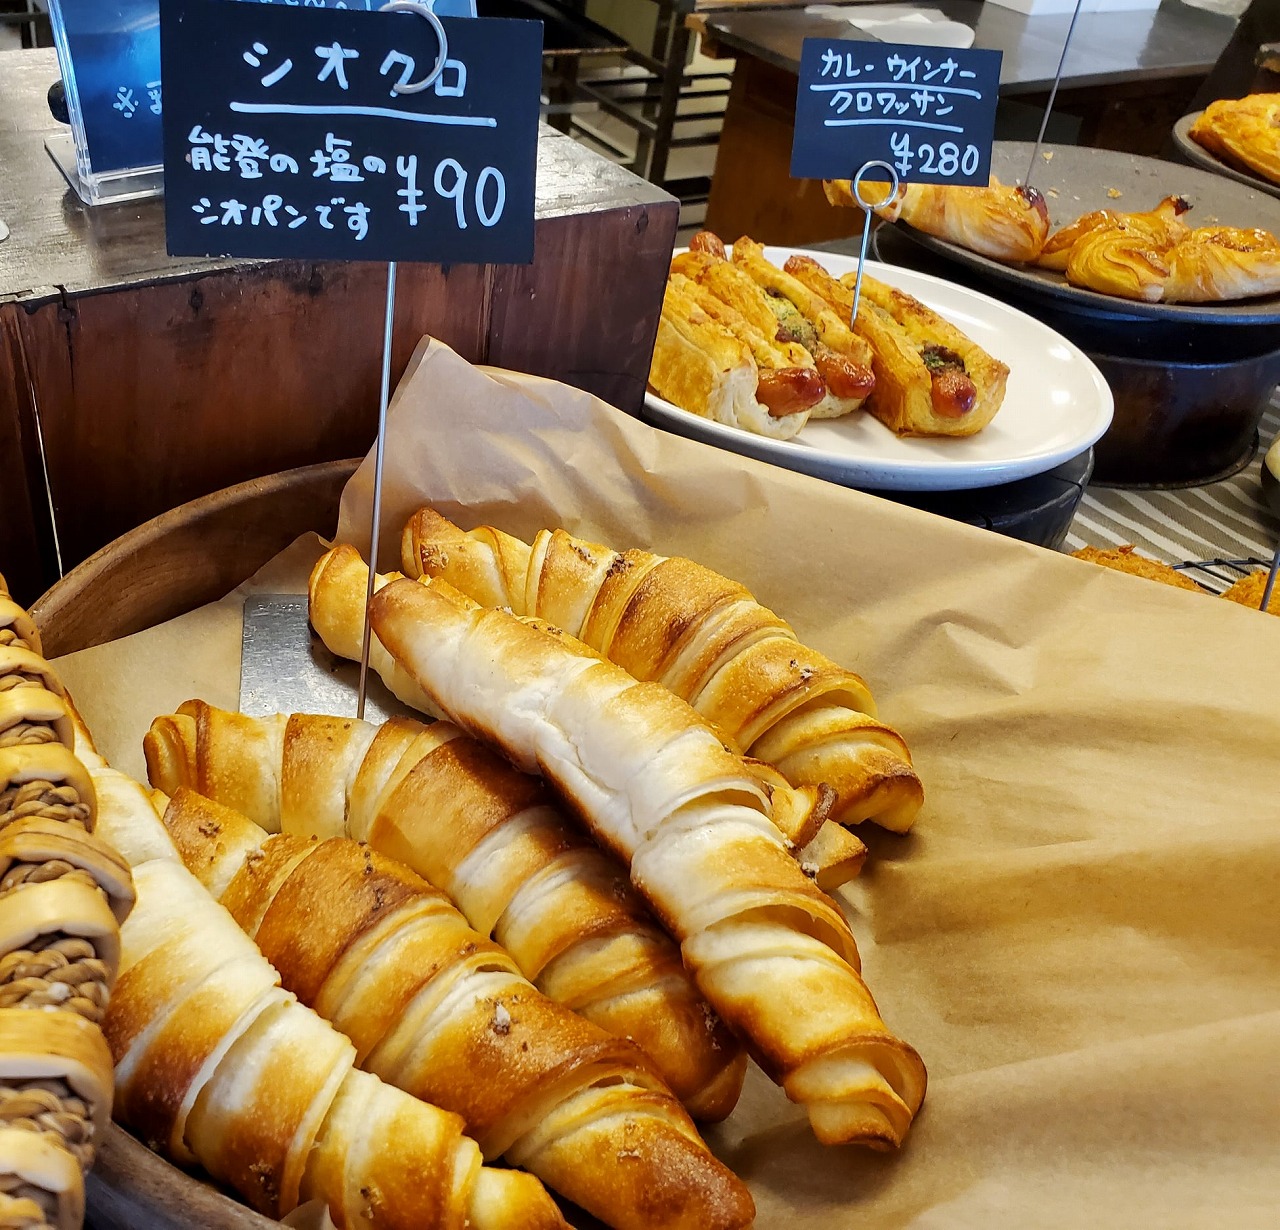 美味しいパンを求めて足を運びたくなるパン屋さん「古川商店」【珠洲市】